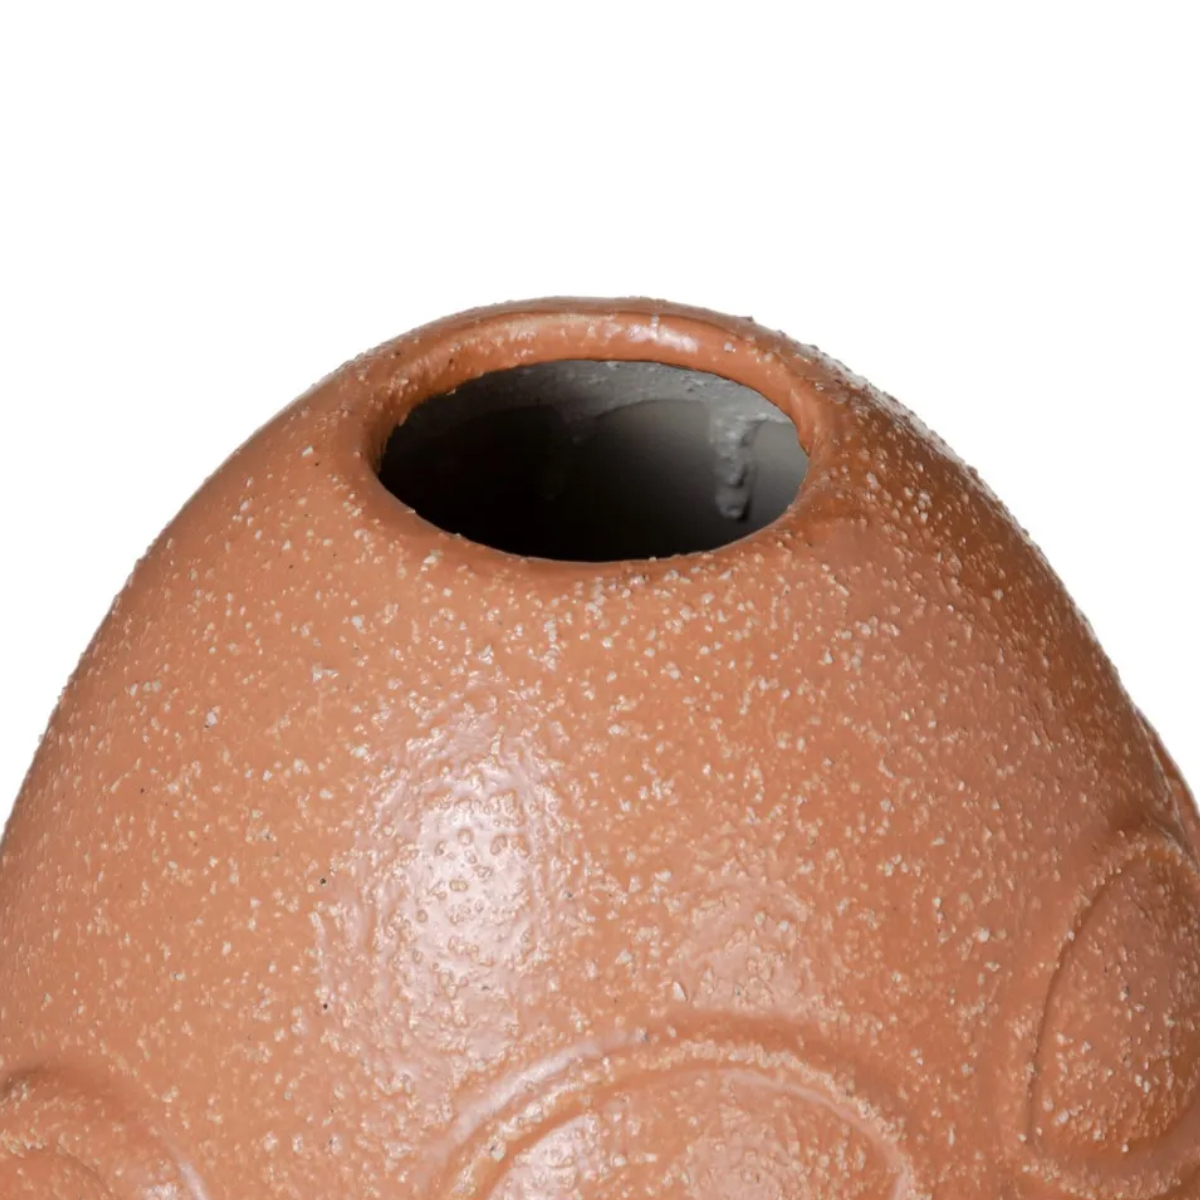 Vase face in orange ocher ceramic